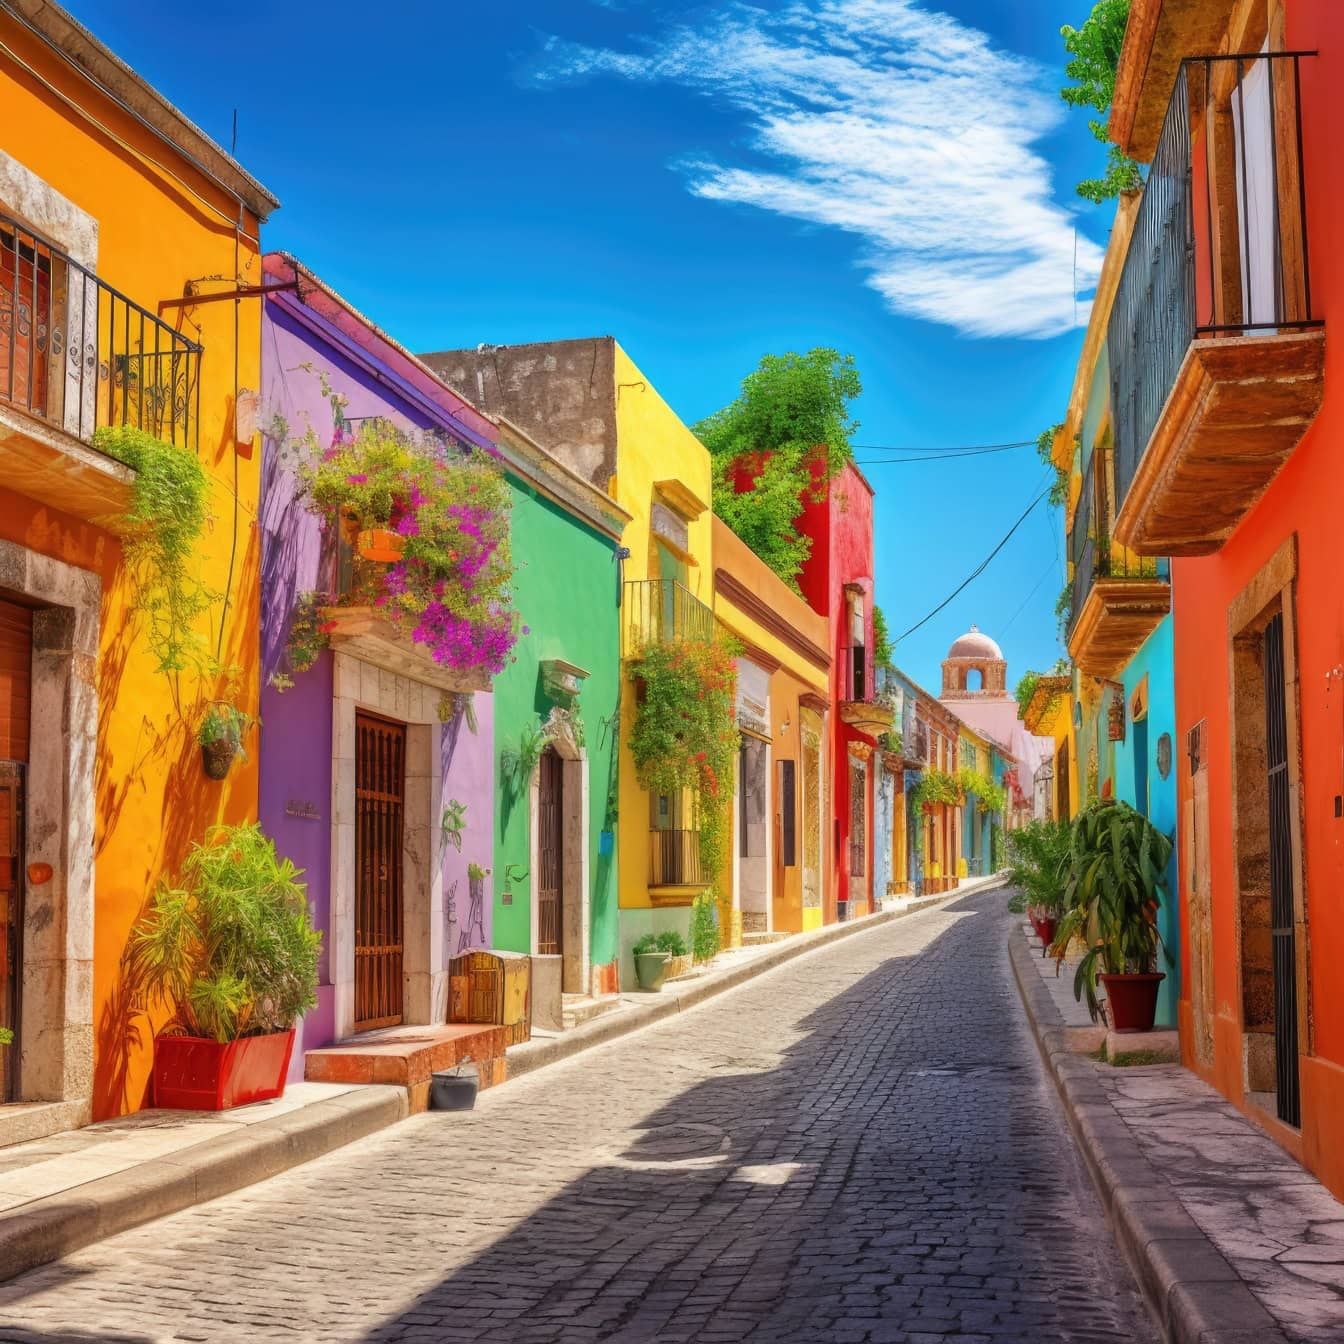 Gráfico de uma rua mexicana na parte histórica de uma cidade com casas em cores vivas